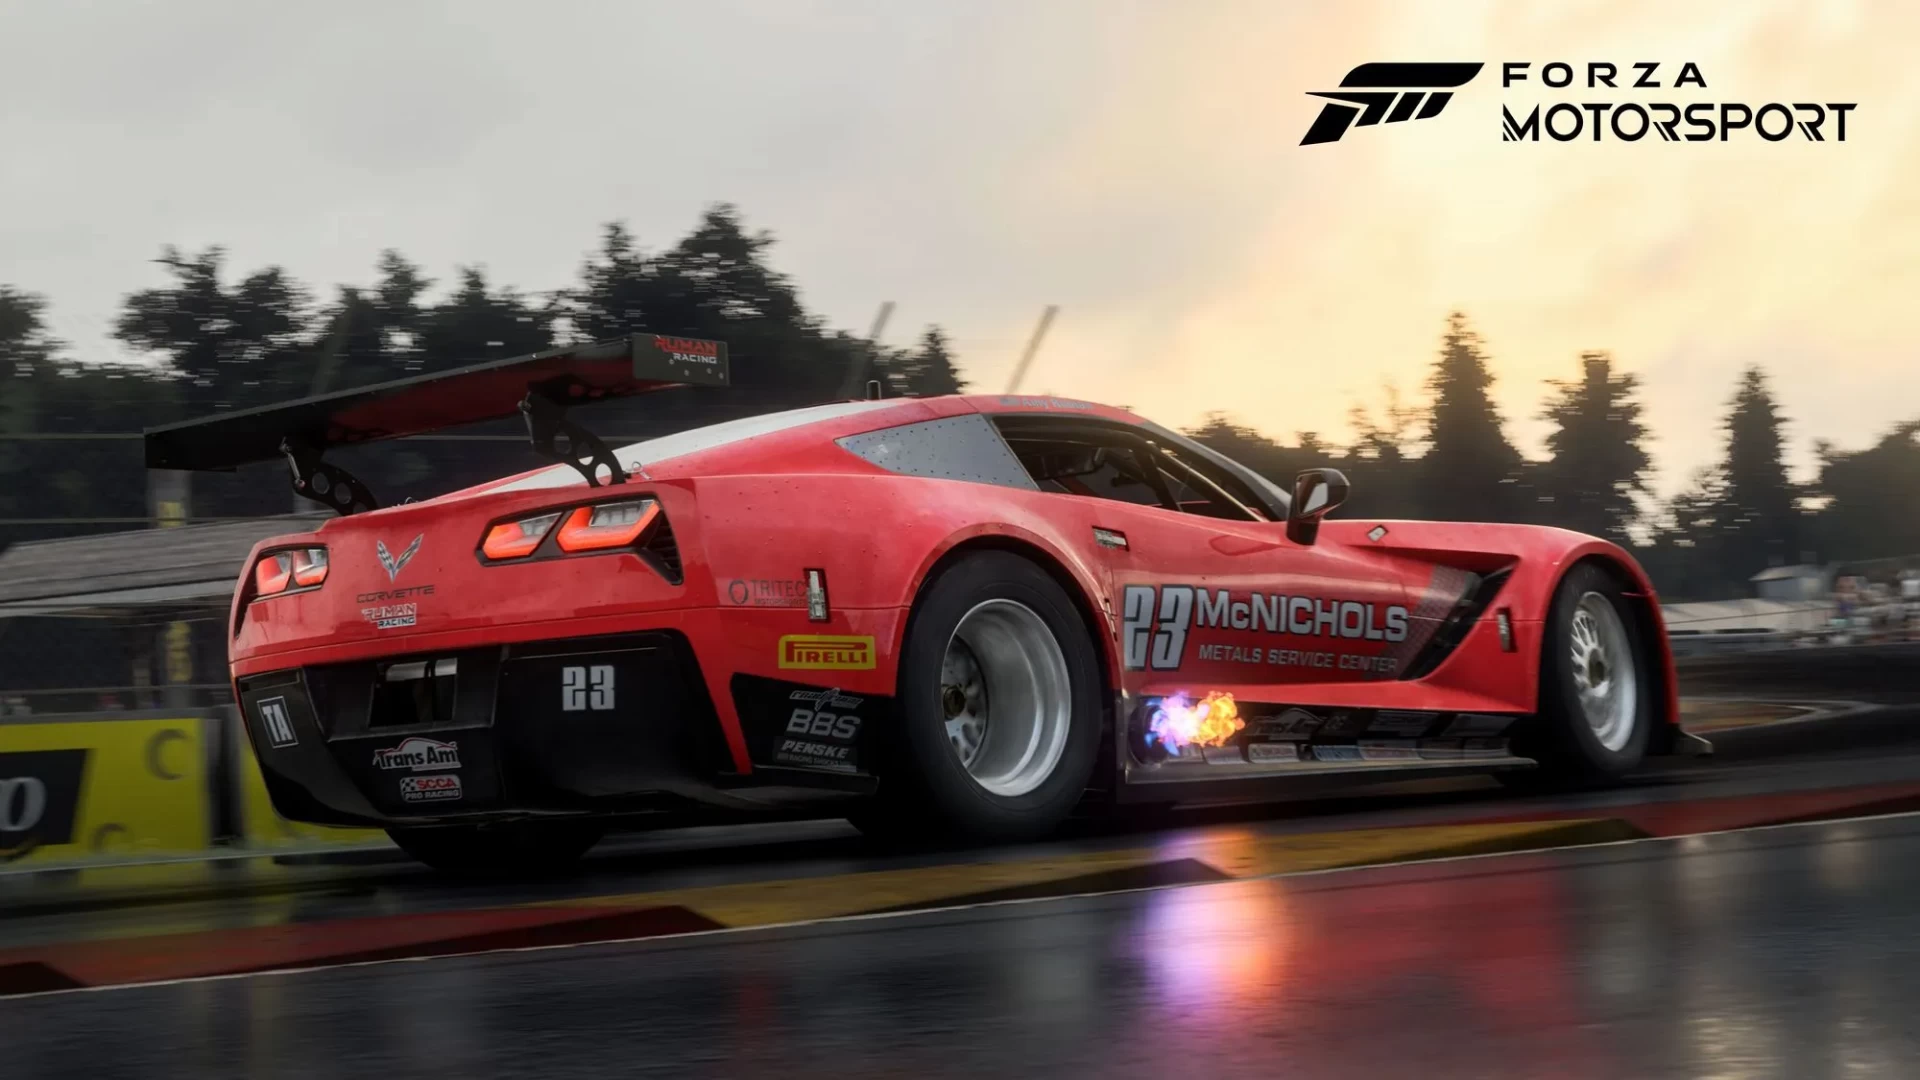 Последняя Forza Motorsport получит решение проблем с ИИ и системой  прогресса | AppTime